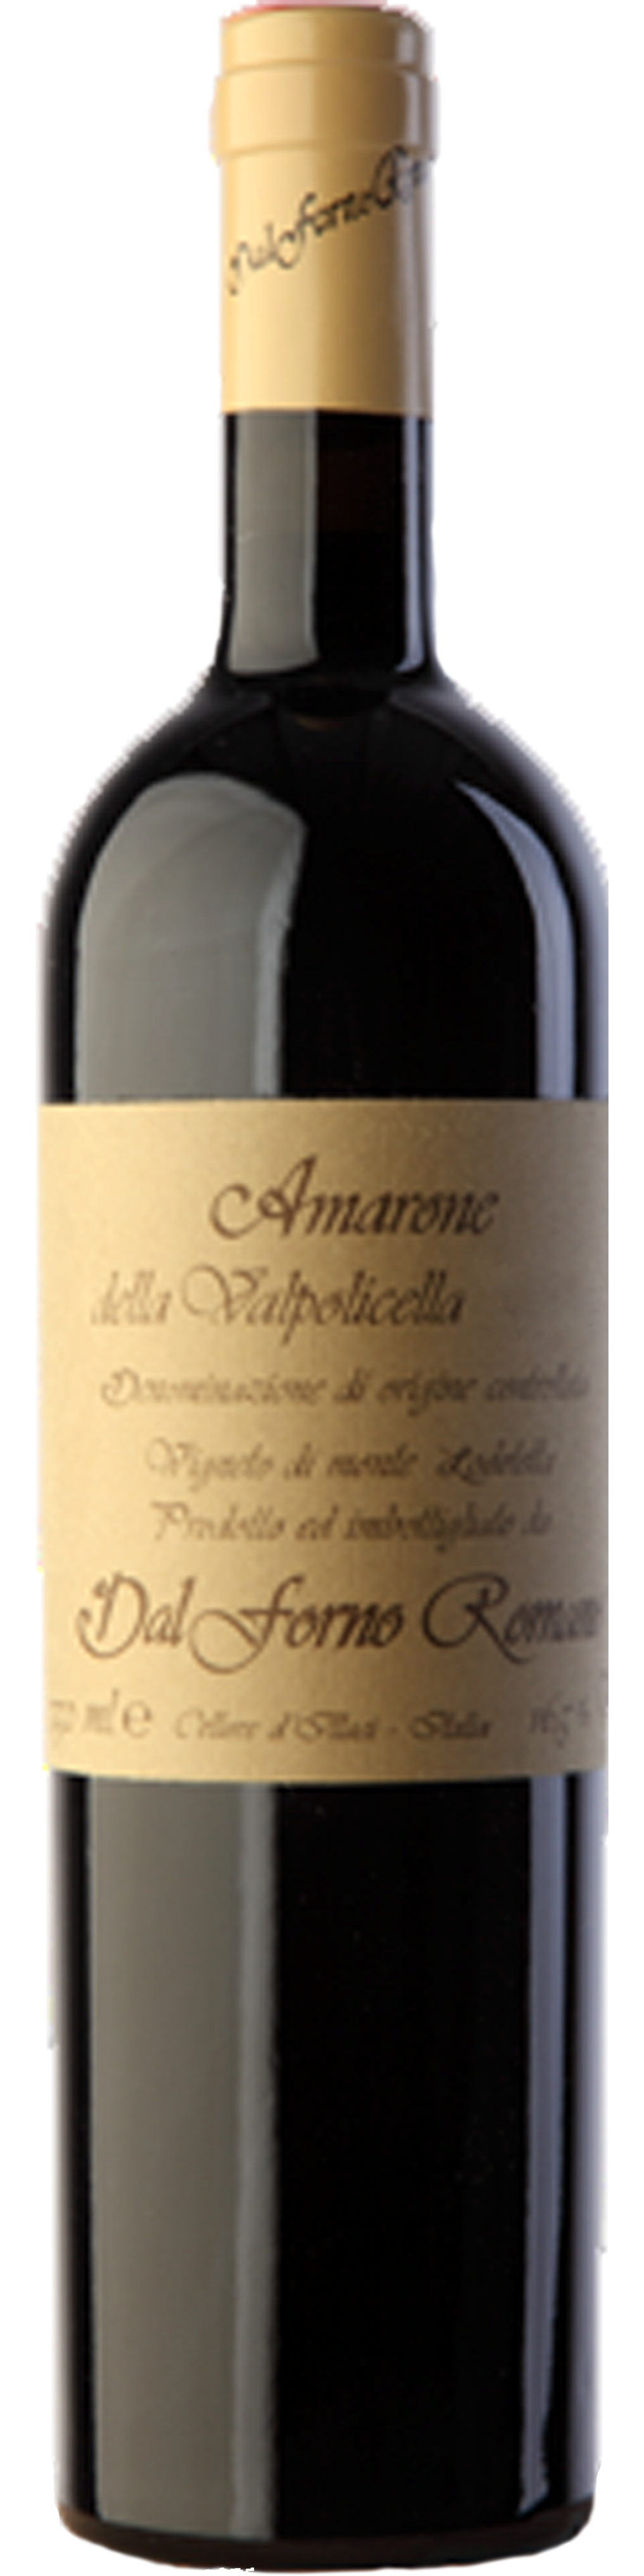 Bottle shot of 2009 Amarone della Valpolicella